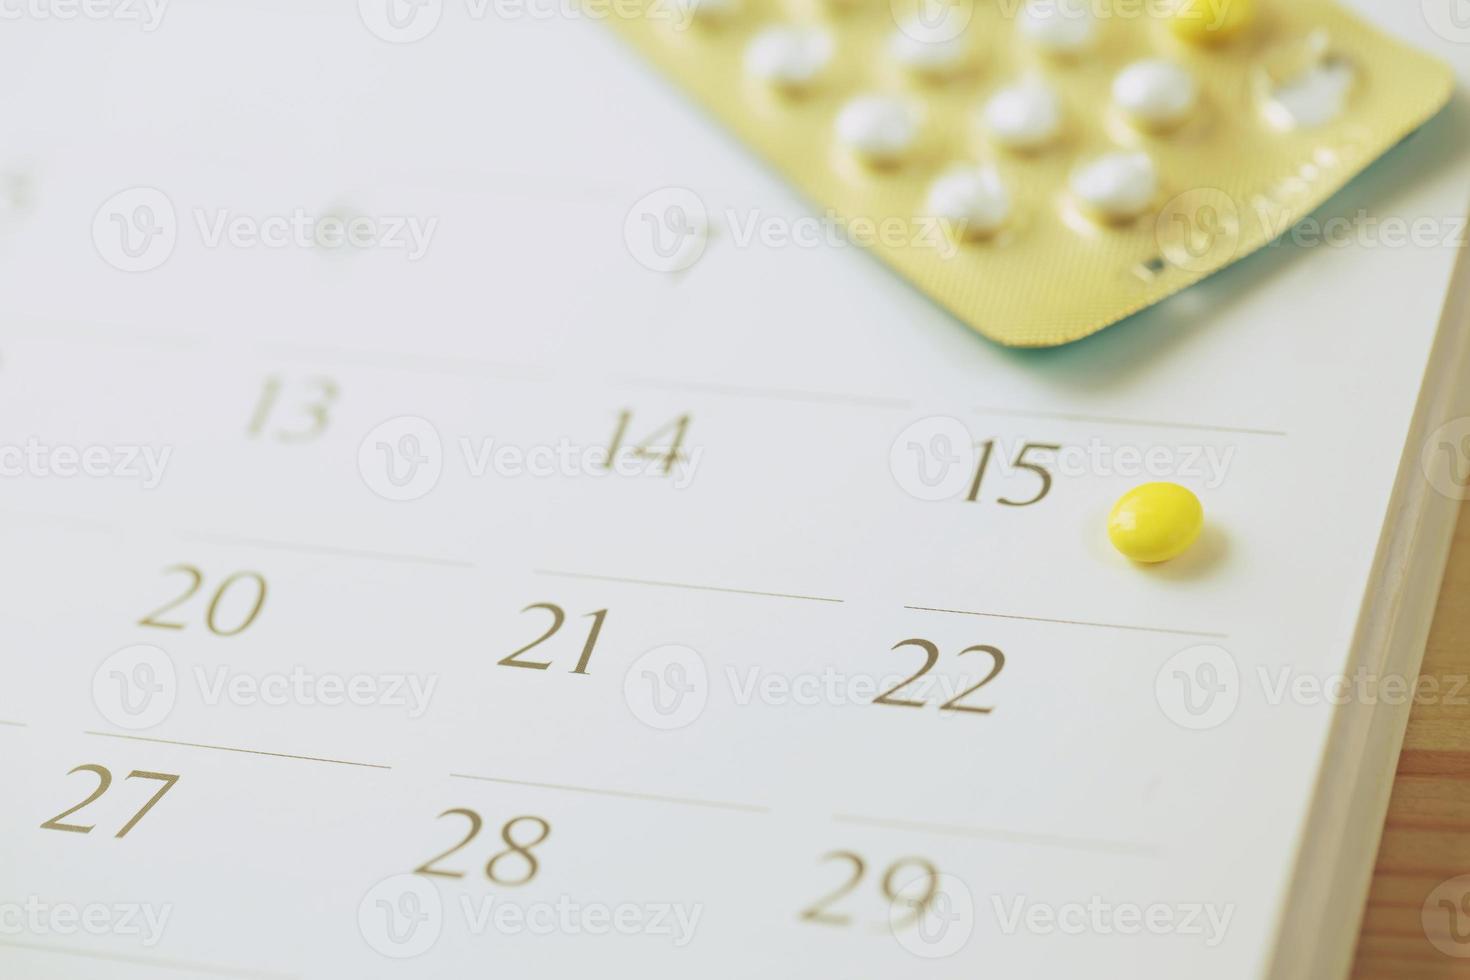 le pillole anticoncezionali e il preservativo alla data del calendario calcolano la data controllano il tasso di natalità foto